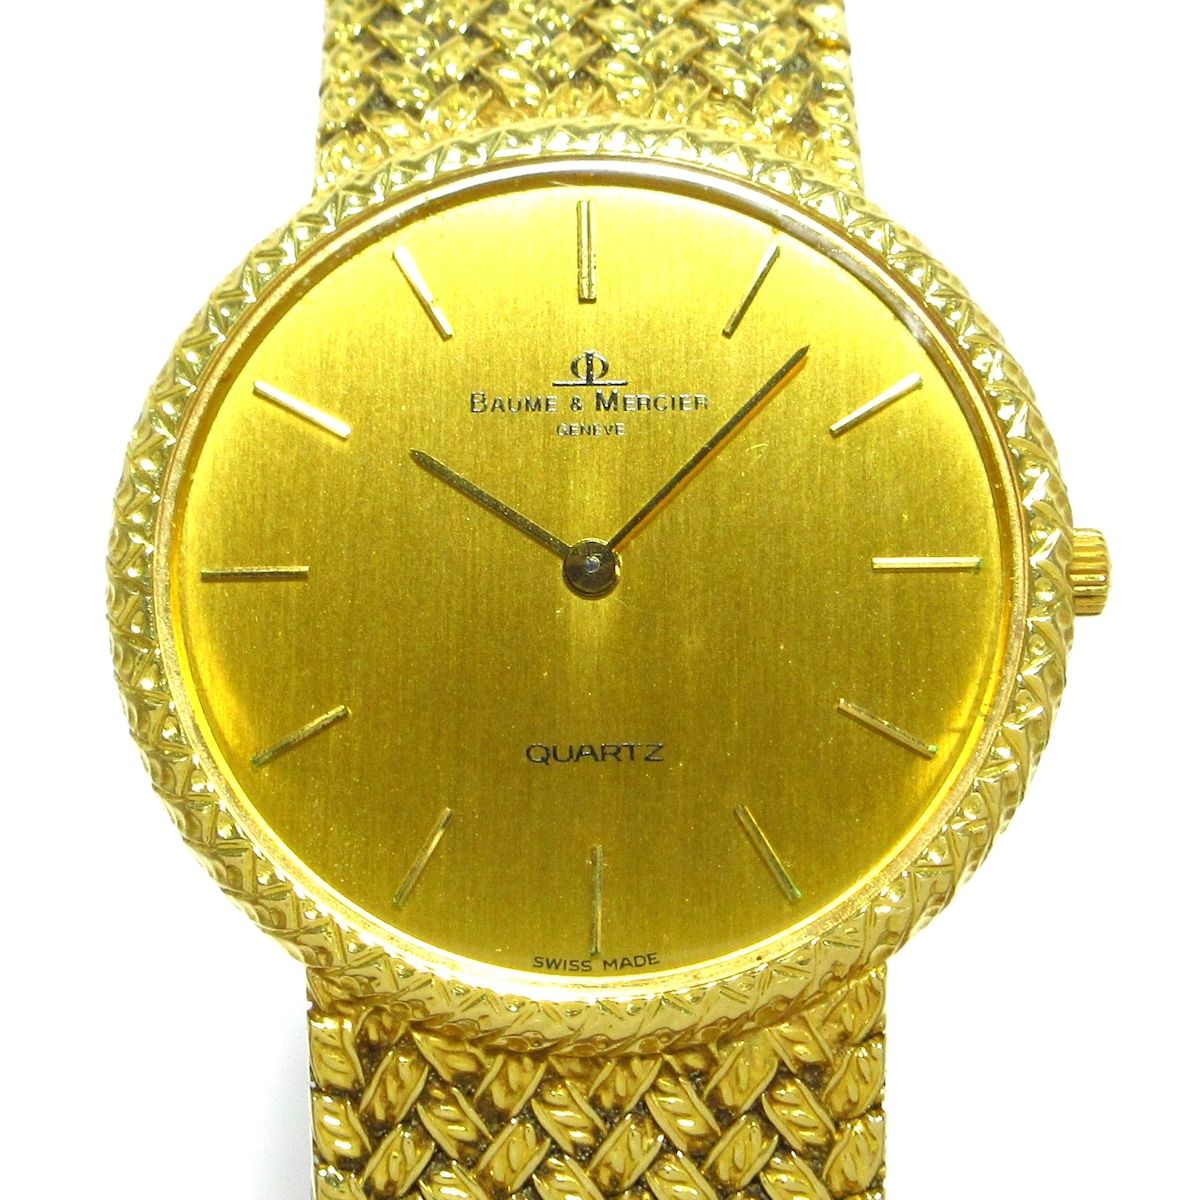 BAUMEu0026MERCIER(ボームu0026メルシエ) 腕時計 - 15143.9 メンズ 金無垢 ゴールド - メルカリ